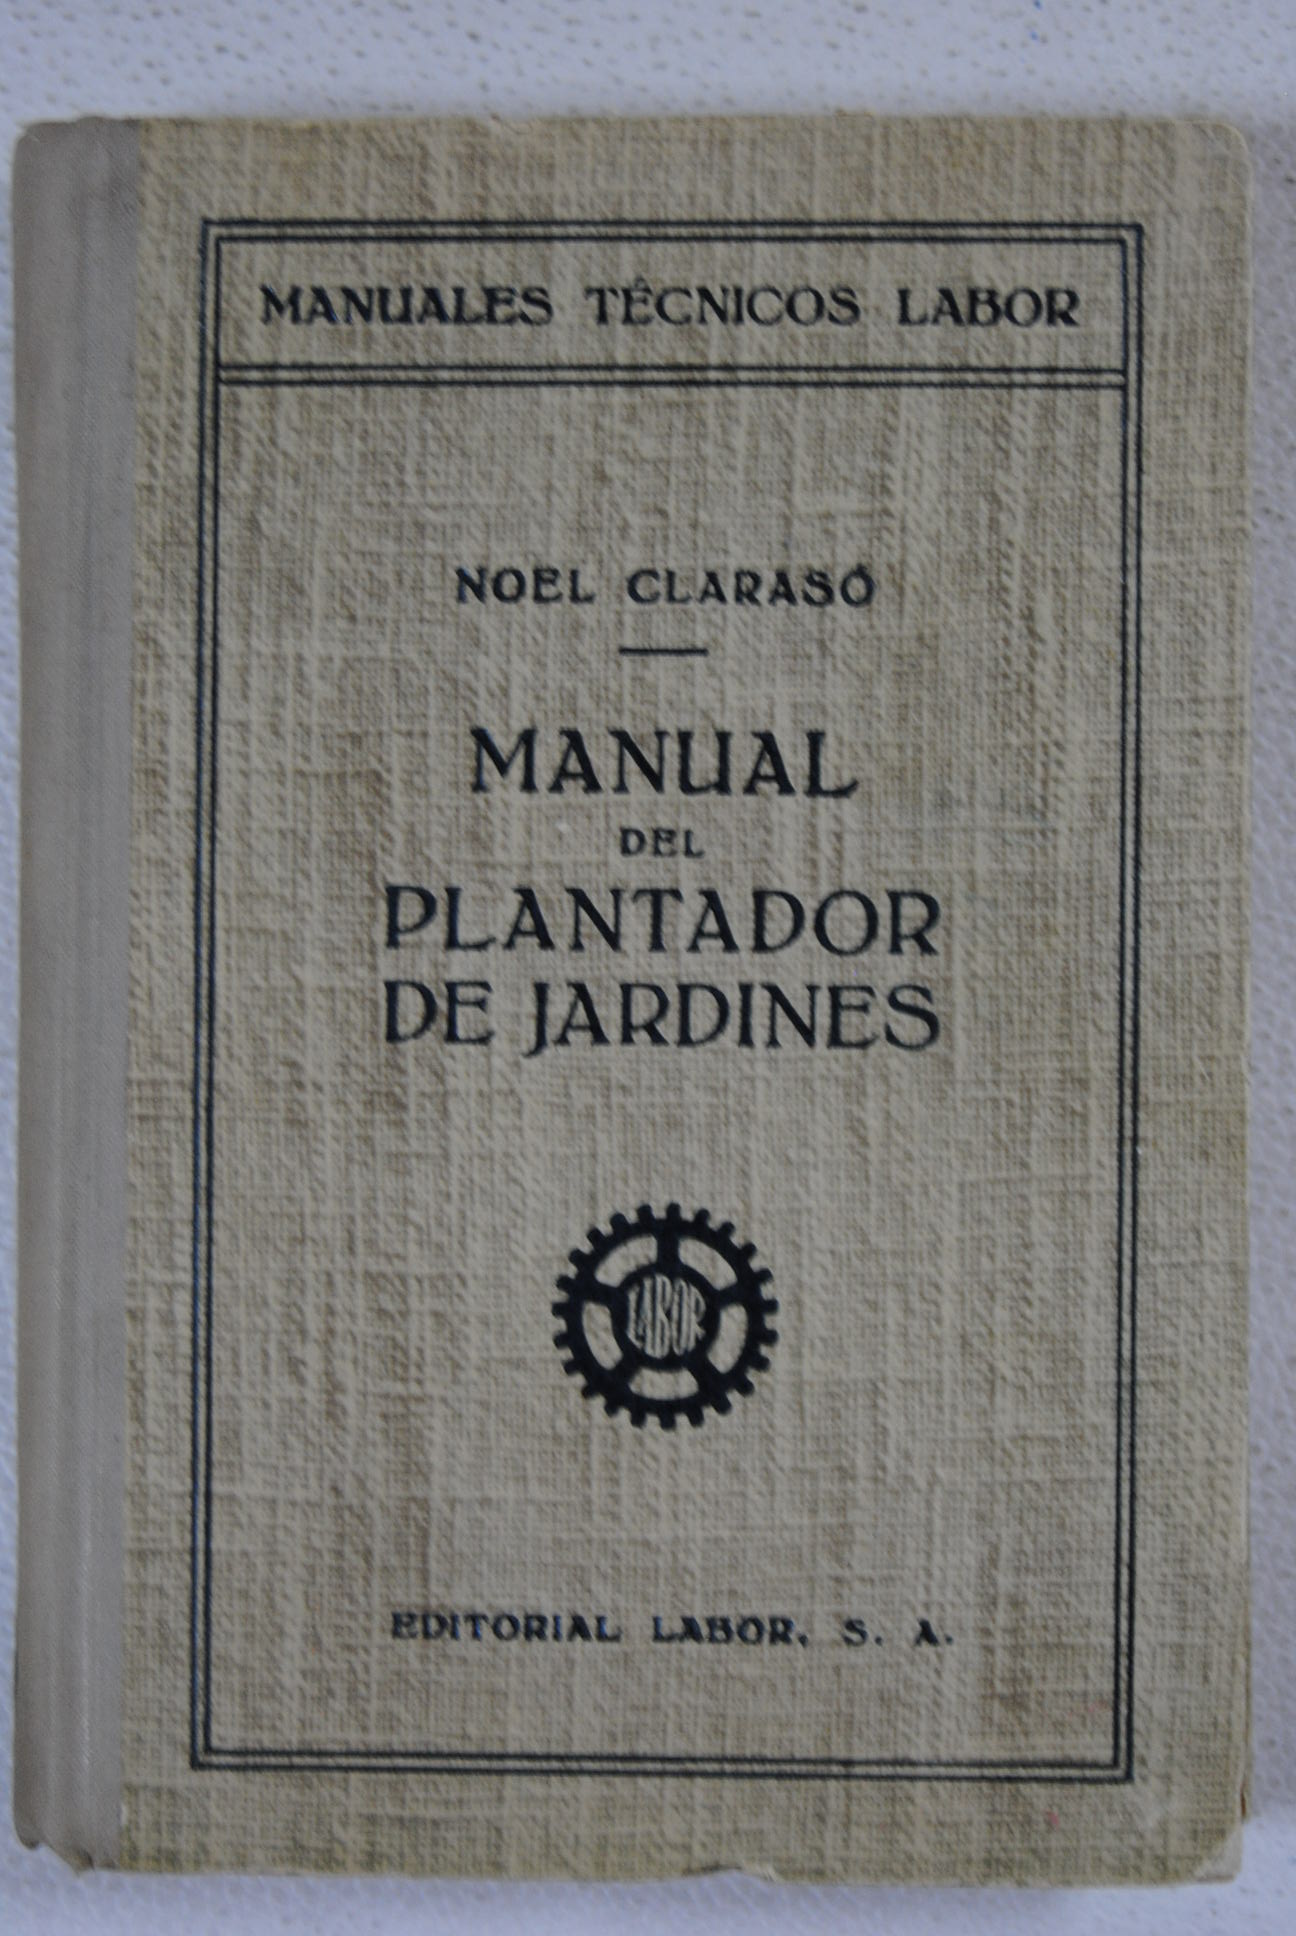 Manual del plantador de jardines / Noel Claras